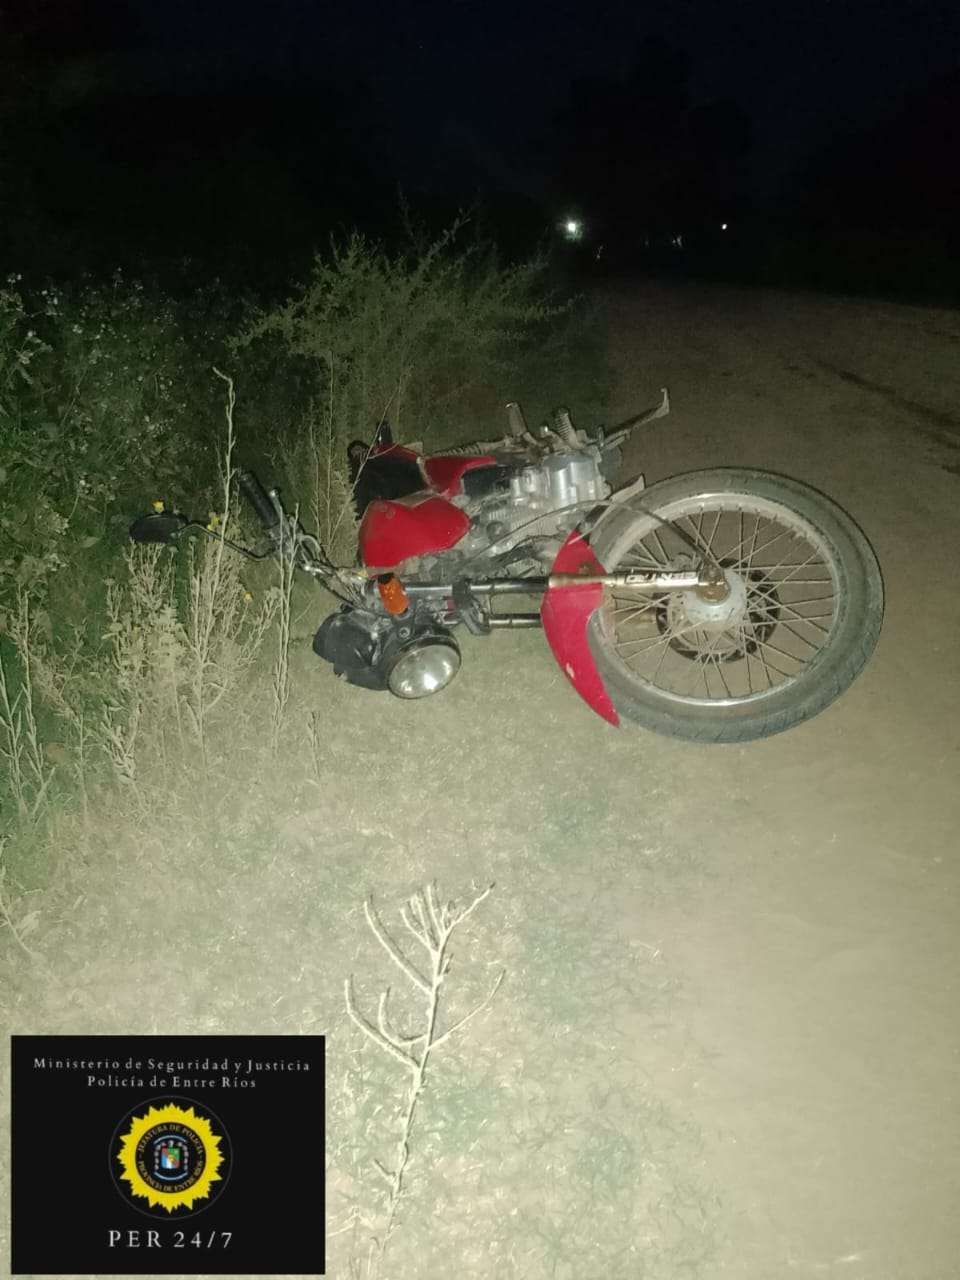 Una joven cayó de su moto al ser pateada por un equino